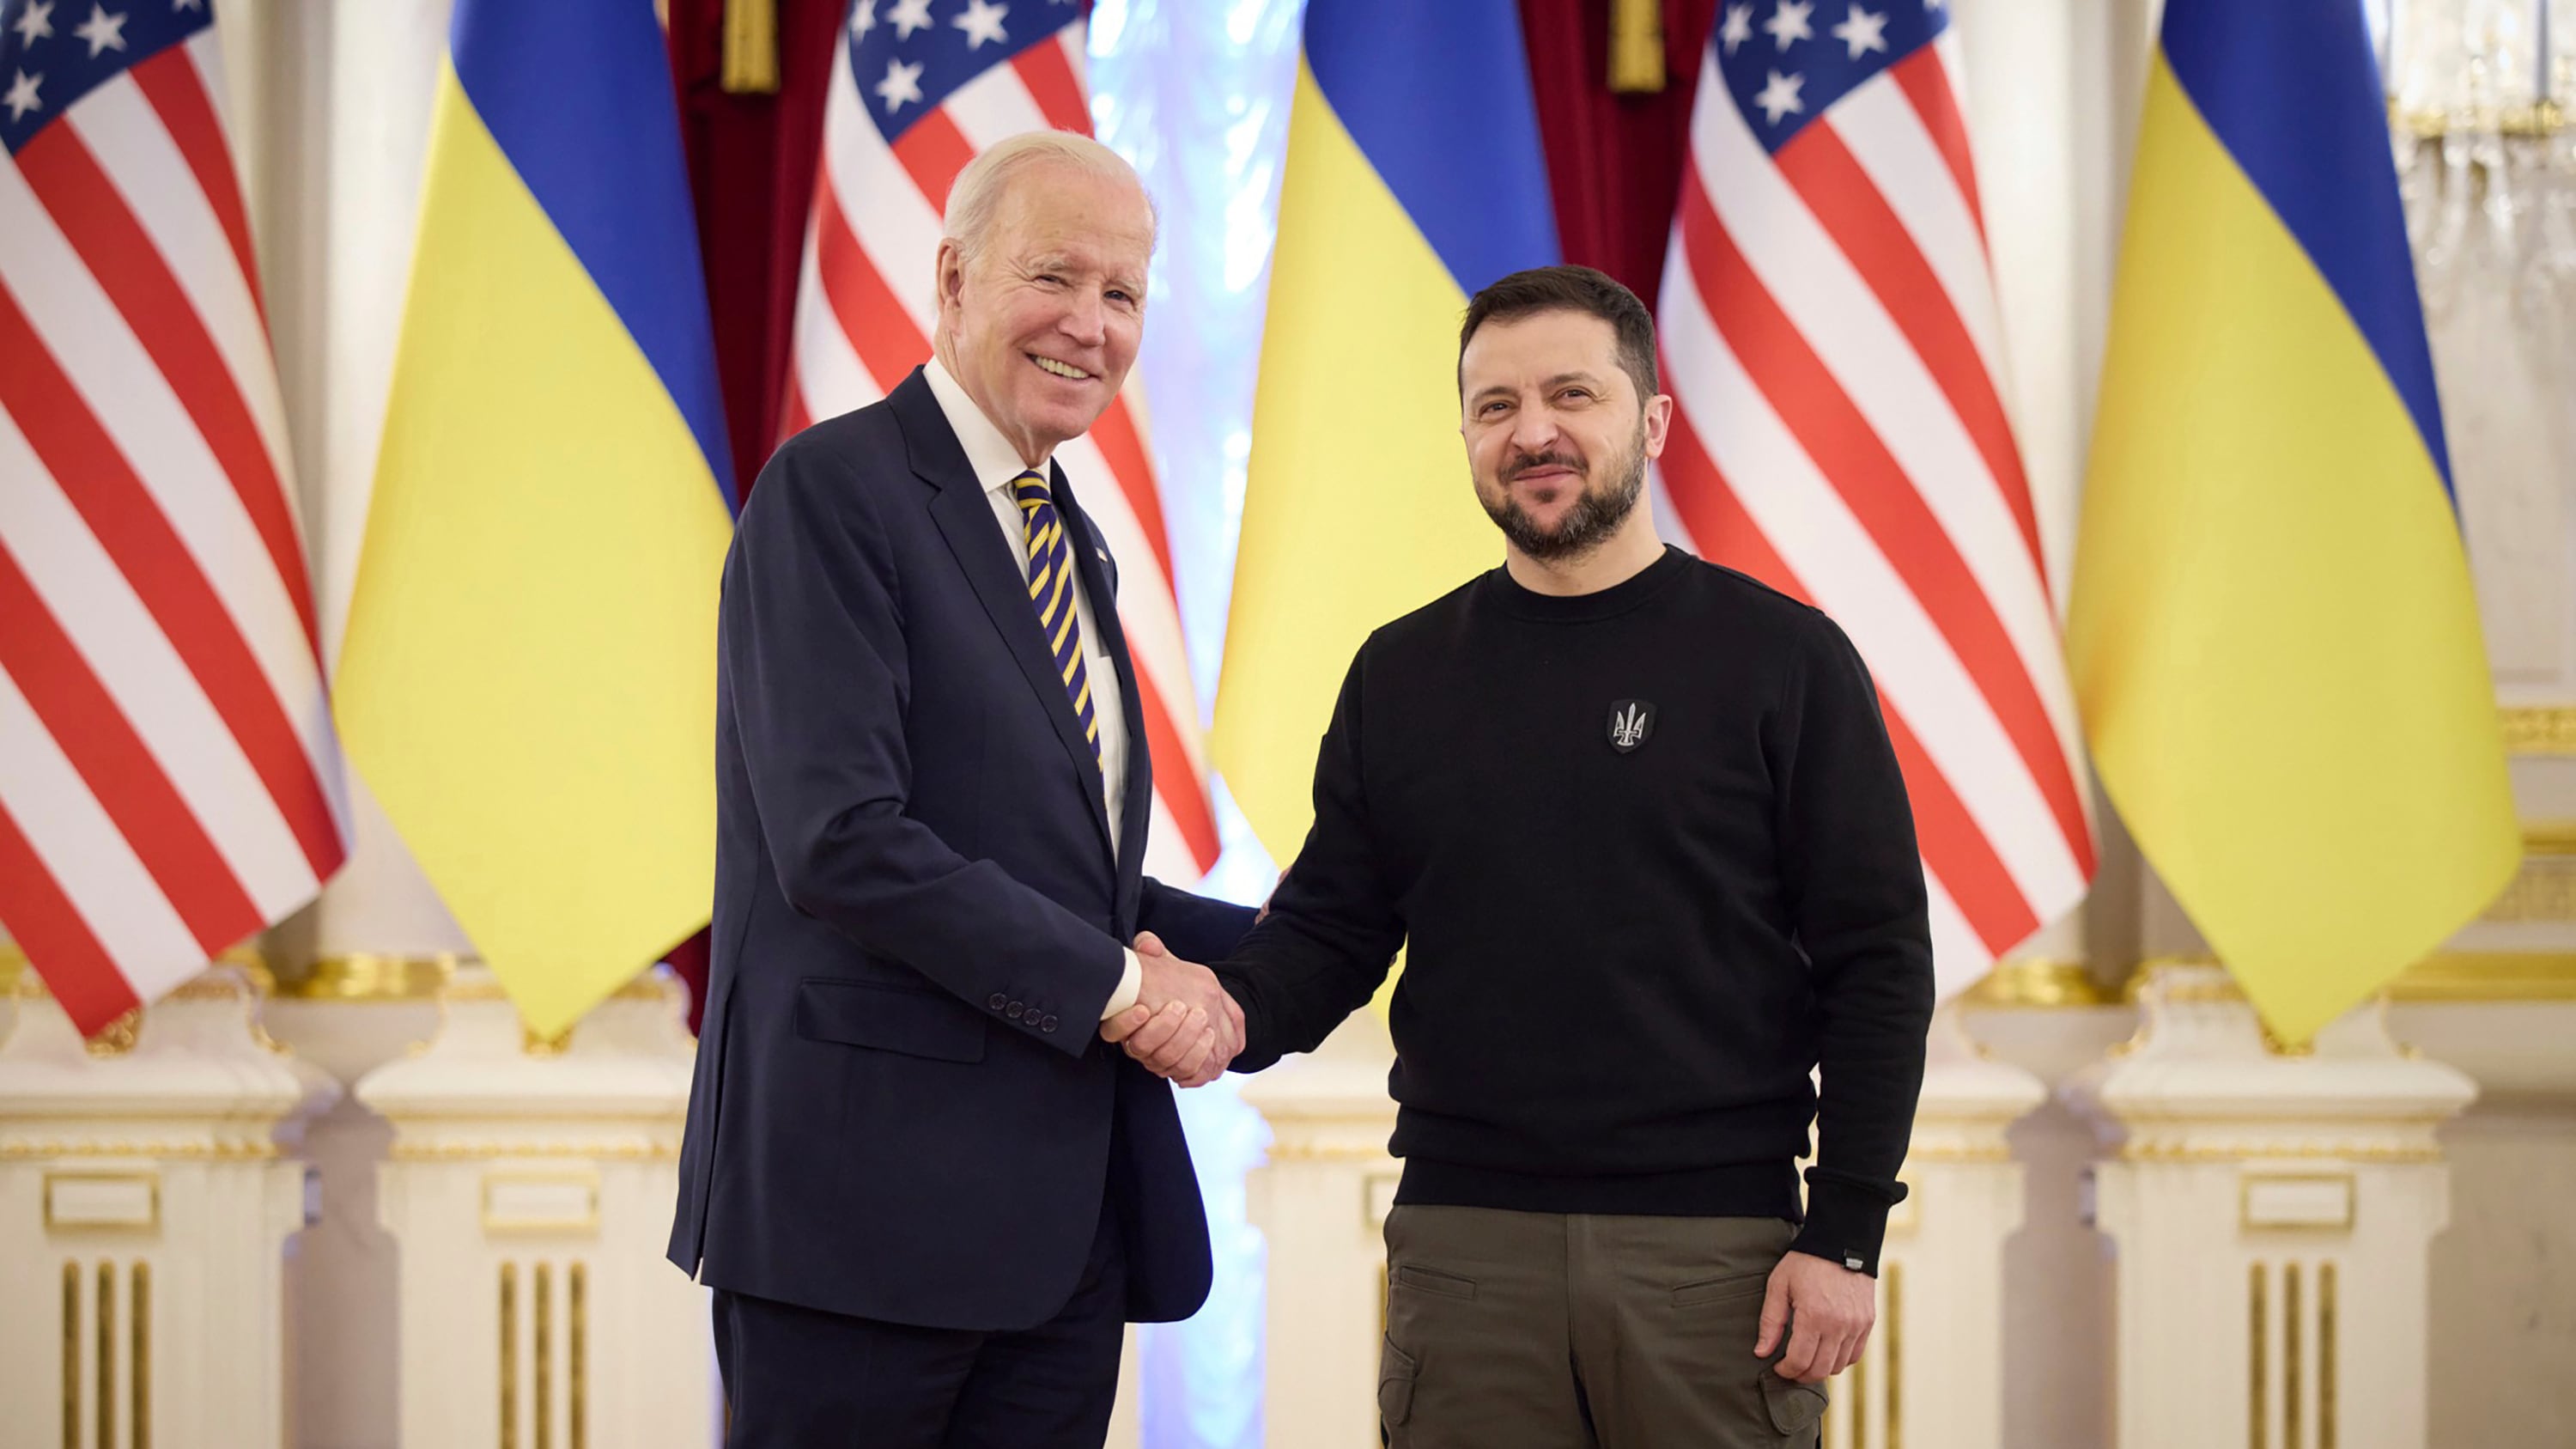 La sorprendente visita de este lunes, nueva confirmación del apoyo estadounidense al gobierno de Kiev, se ha producido en el marco del viaje del mandatario a Polonia